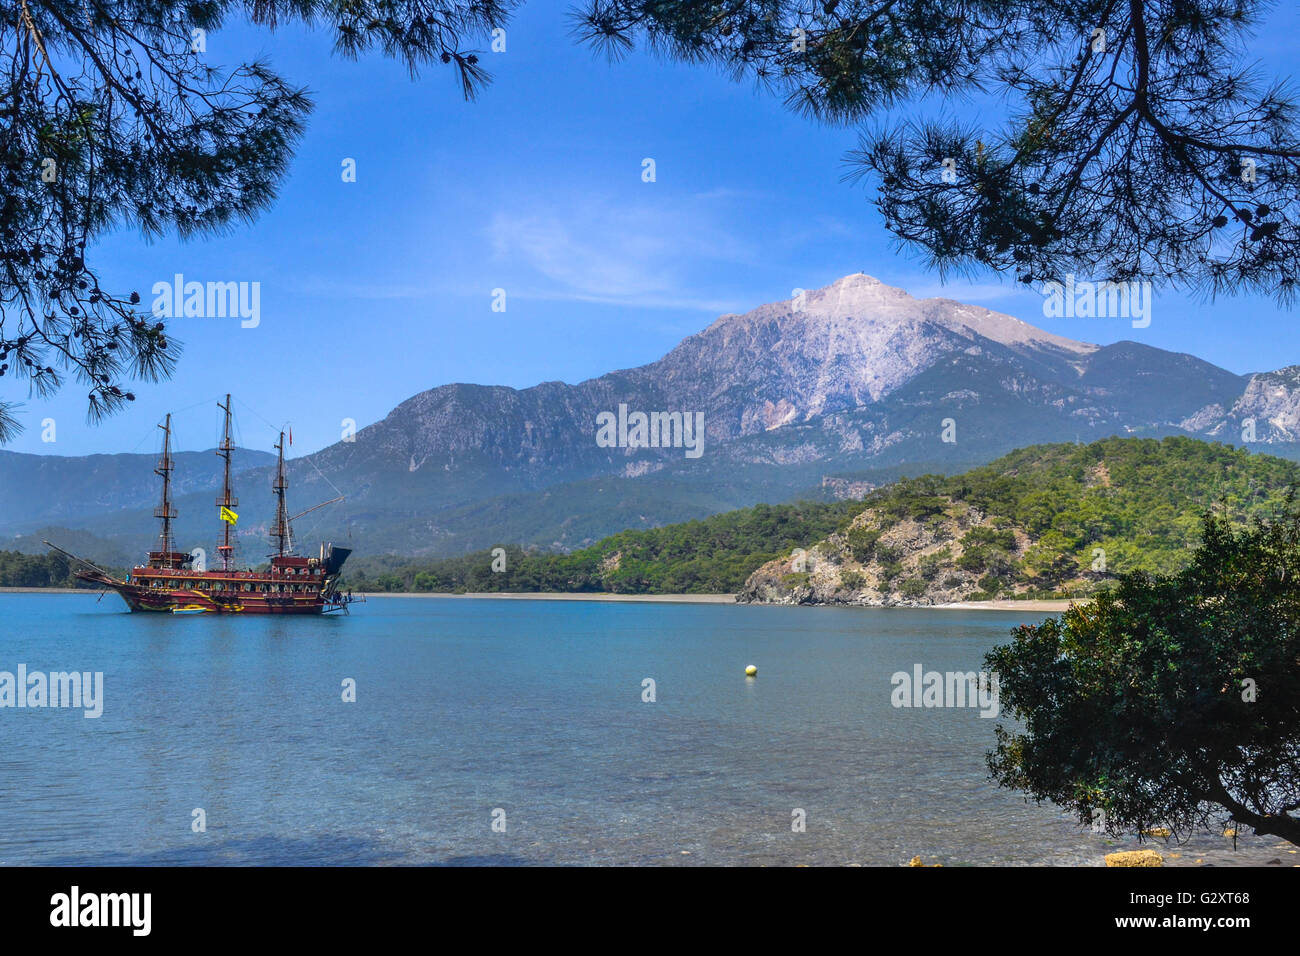 Voyage, Turquie, kemer, bateau, word, incroyable vue de carte postale, les montagnes avec de la neige Banque D'Images